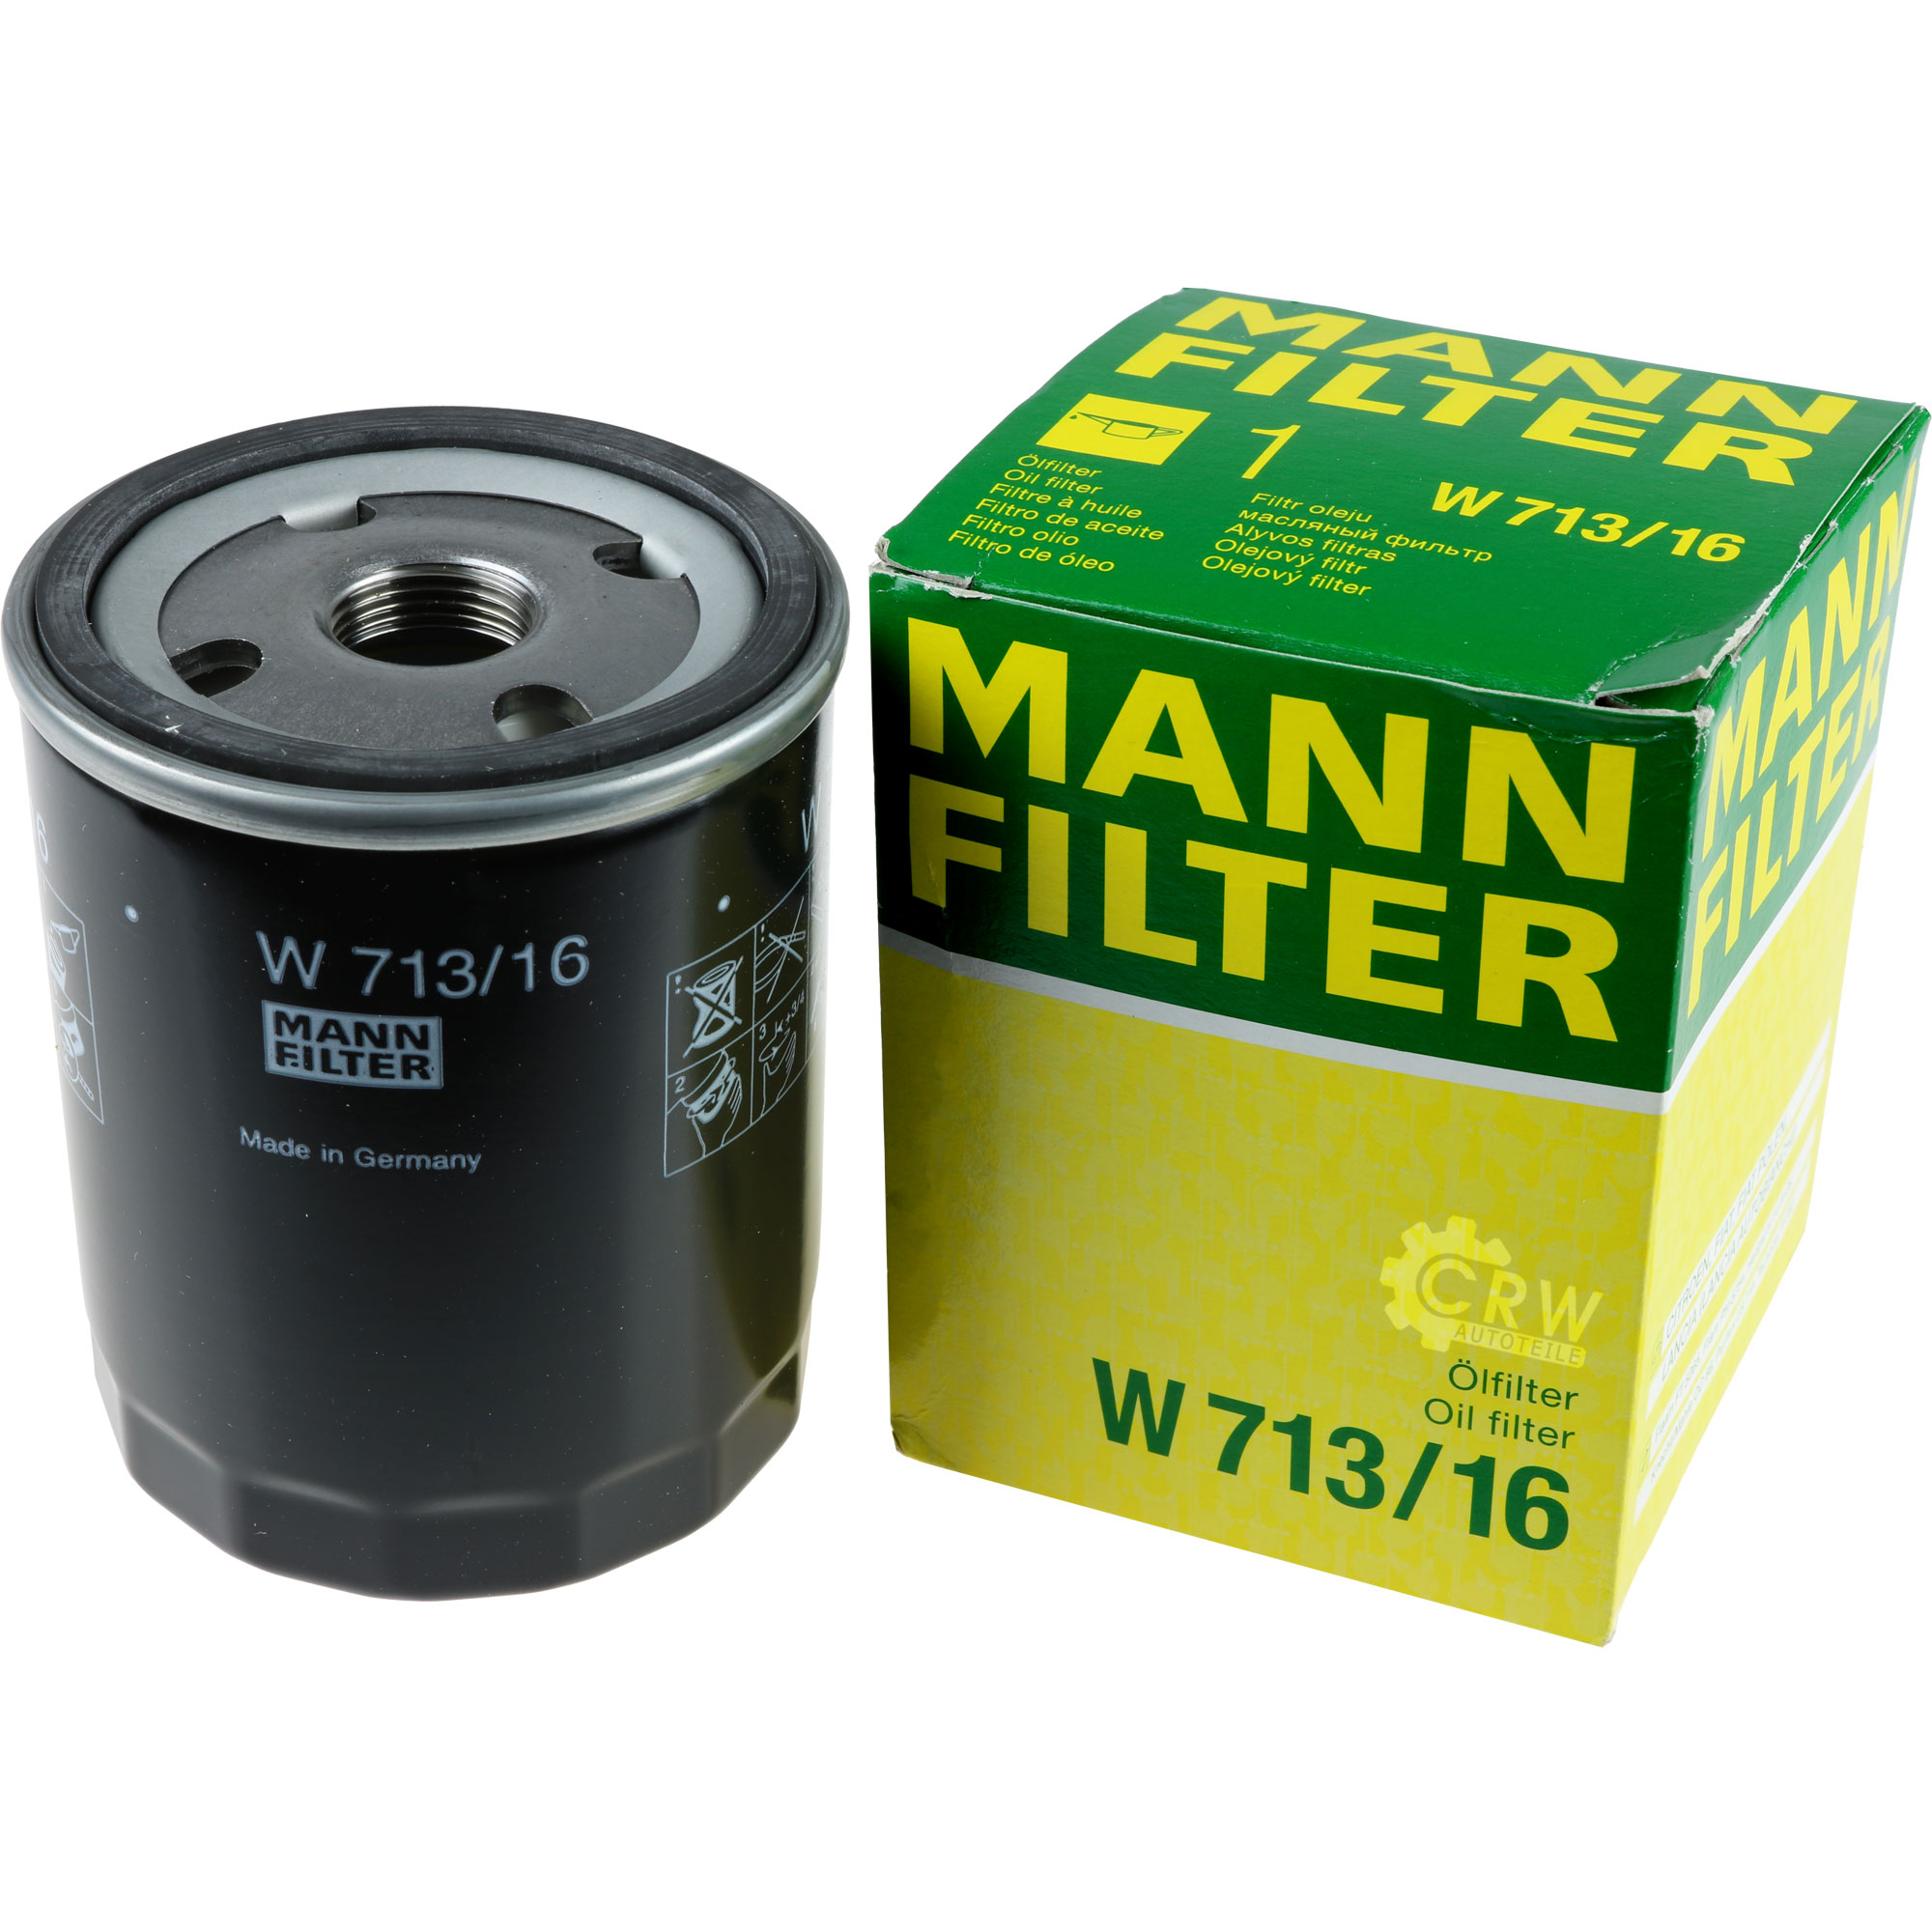 MANN-FILTER Ölfilter W 713/16 Oil Filter